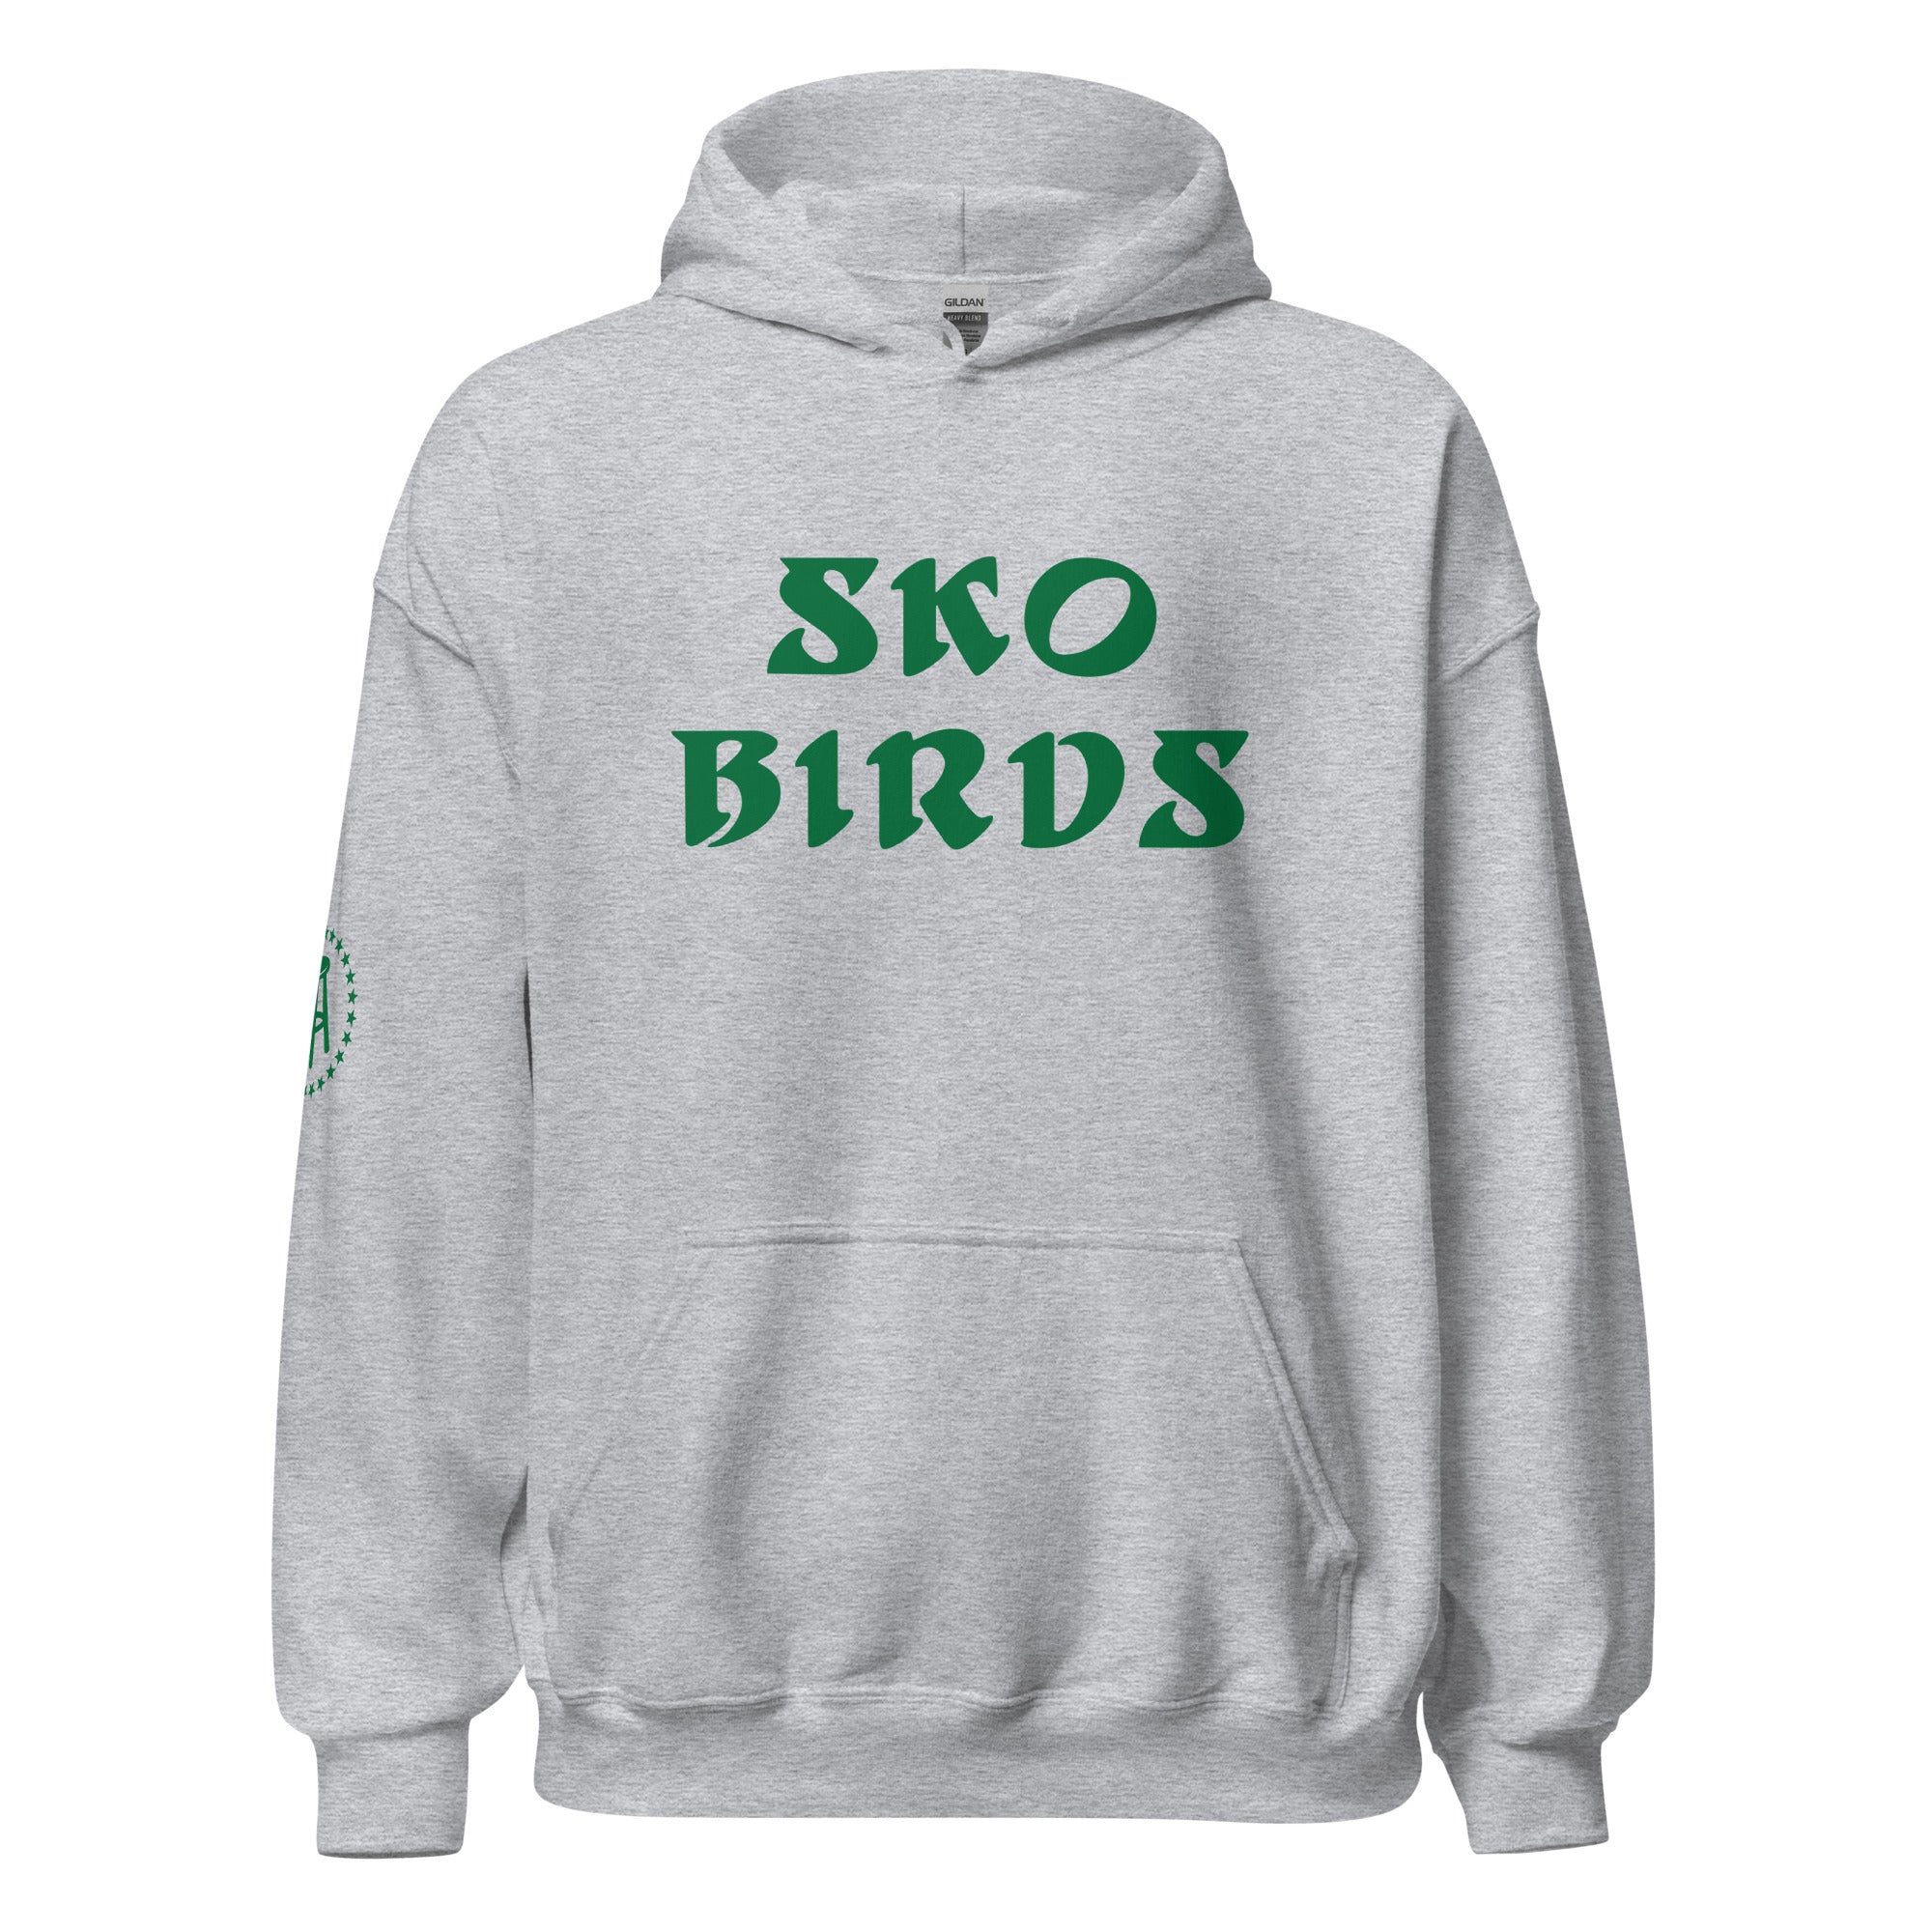 Sko Birds Hoodie-Hoodies & Sweatshirts-Barstool Sports-Grey-S-Barstool Sports